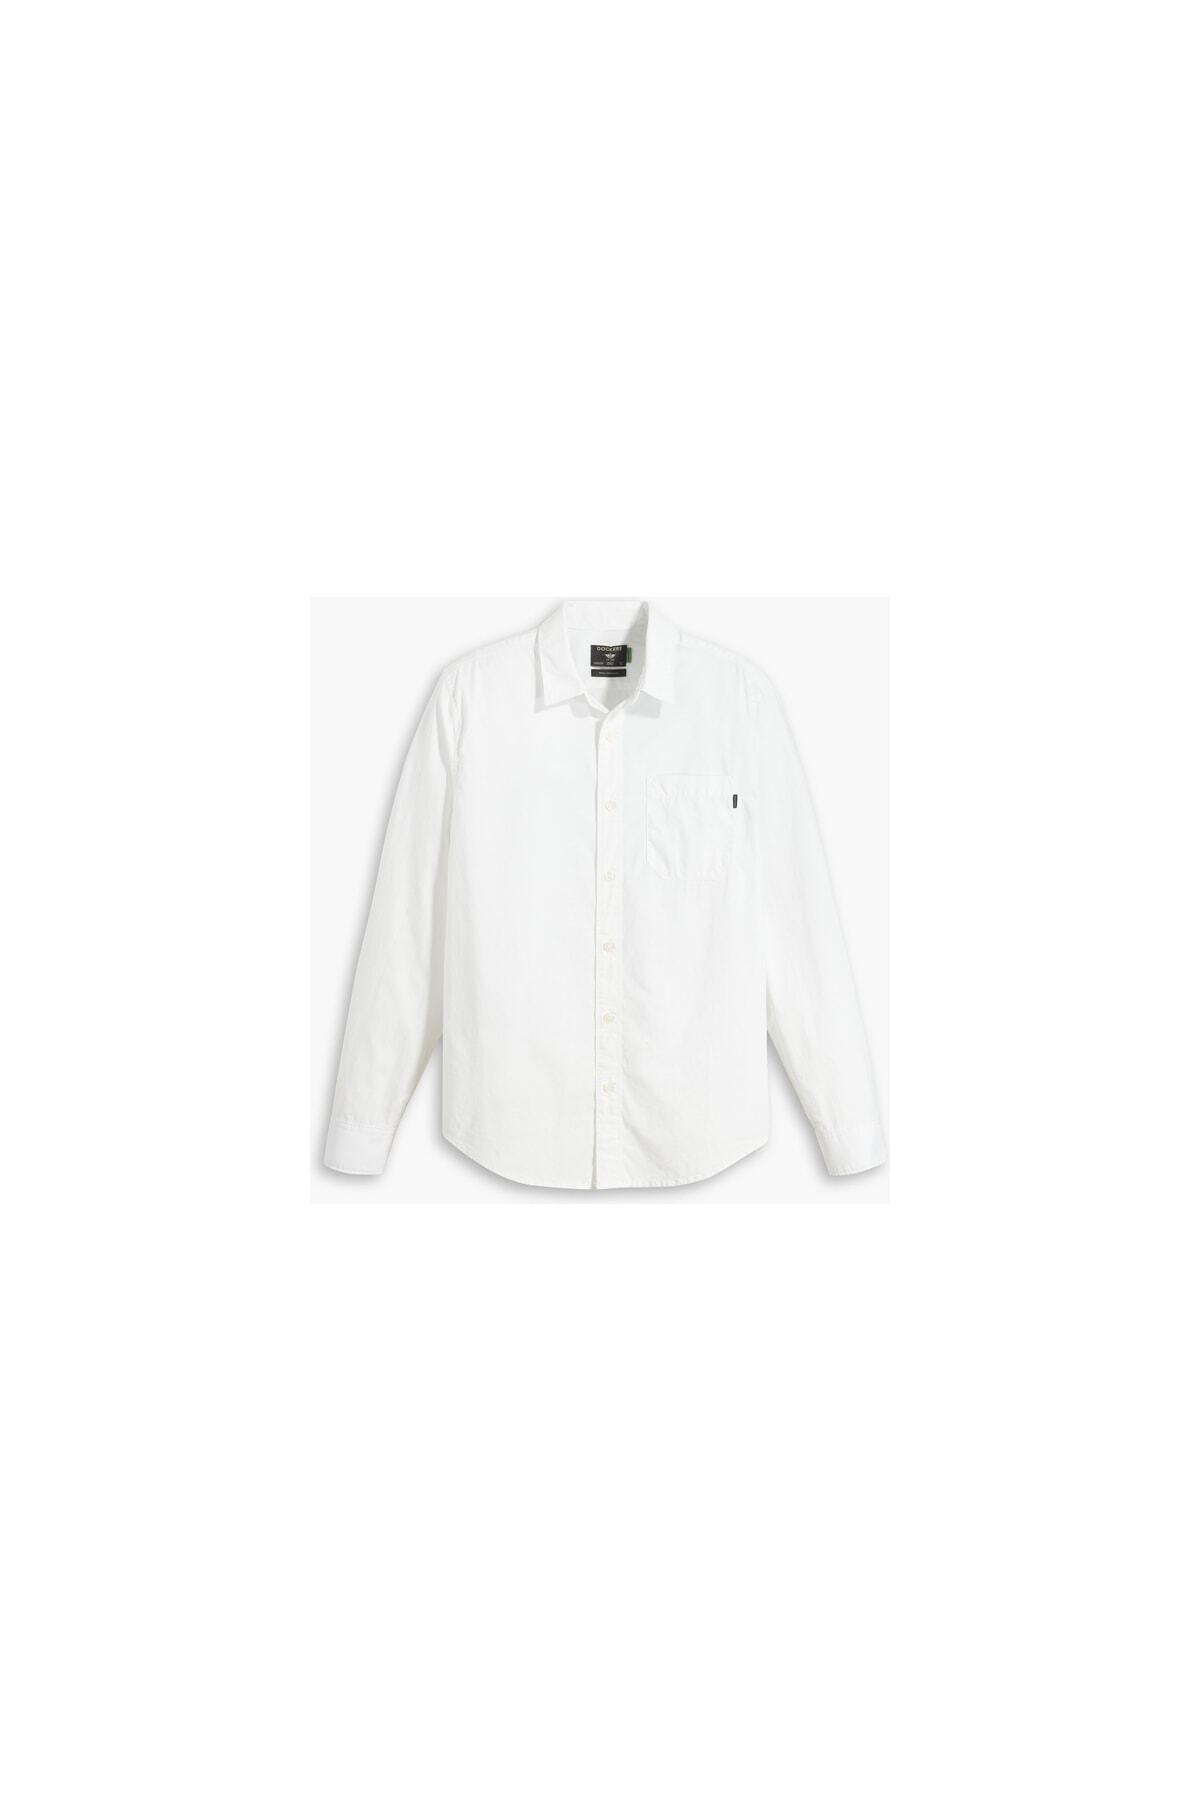 Dockers Casual Beyaz Gömlek, Slim Fit